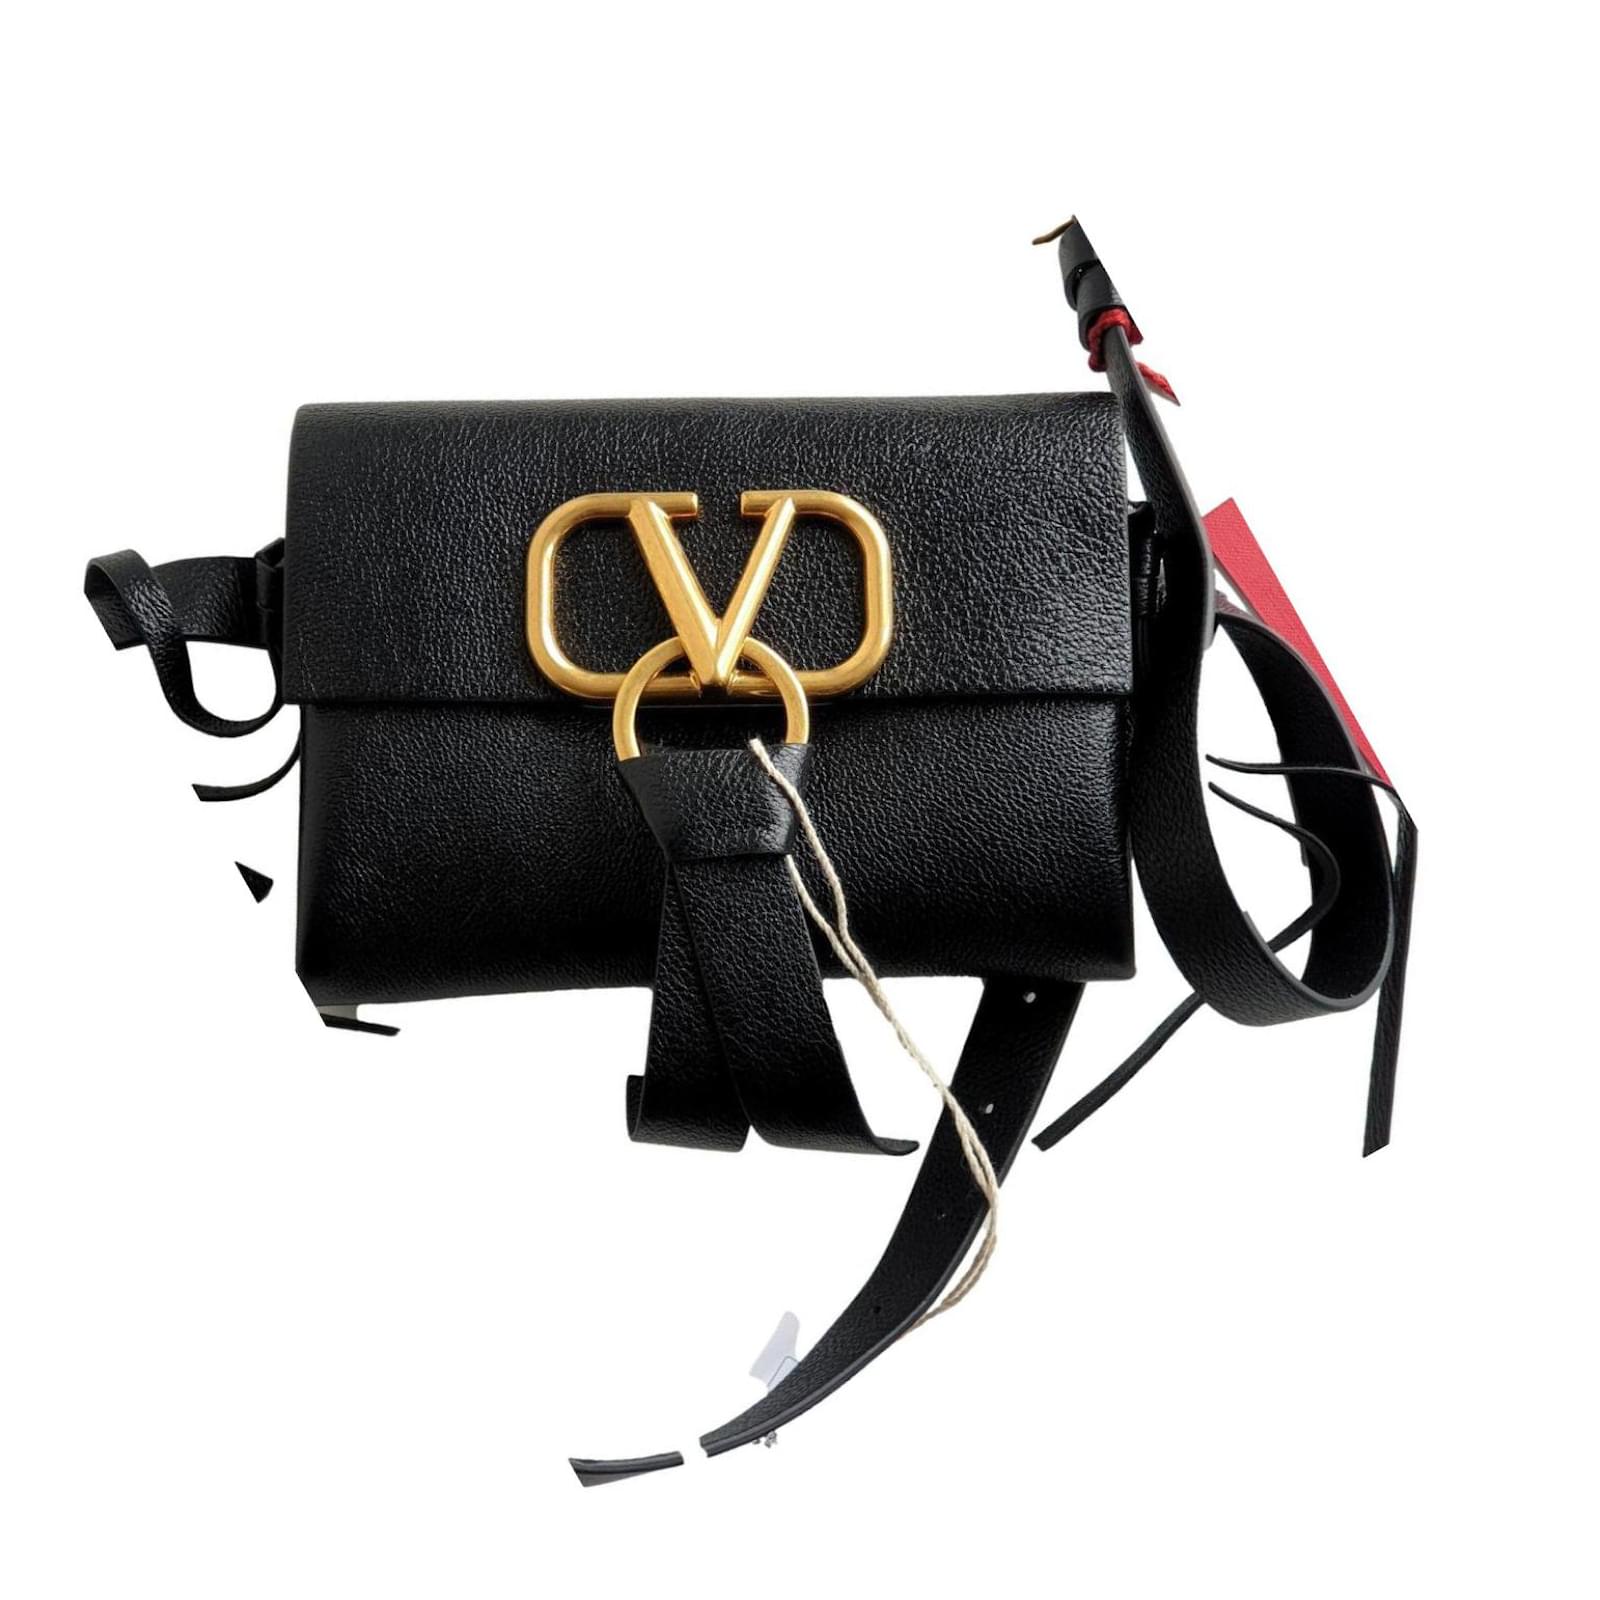 Valentino Garavani Large V-Ring Leather Shoulder Bag on SALE